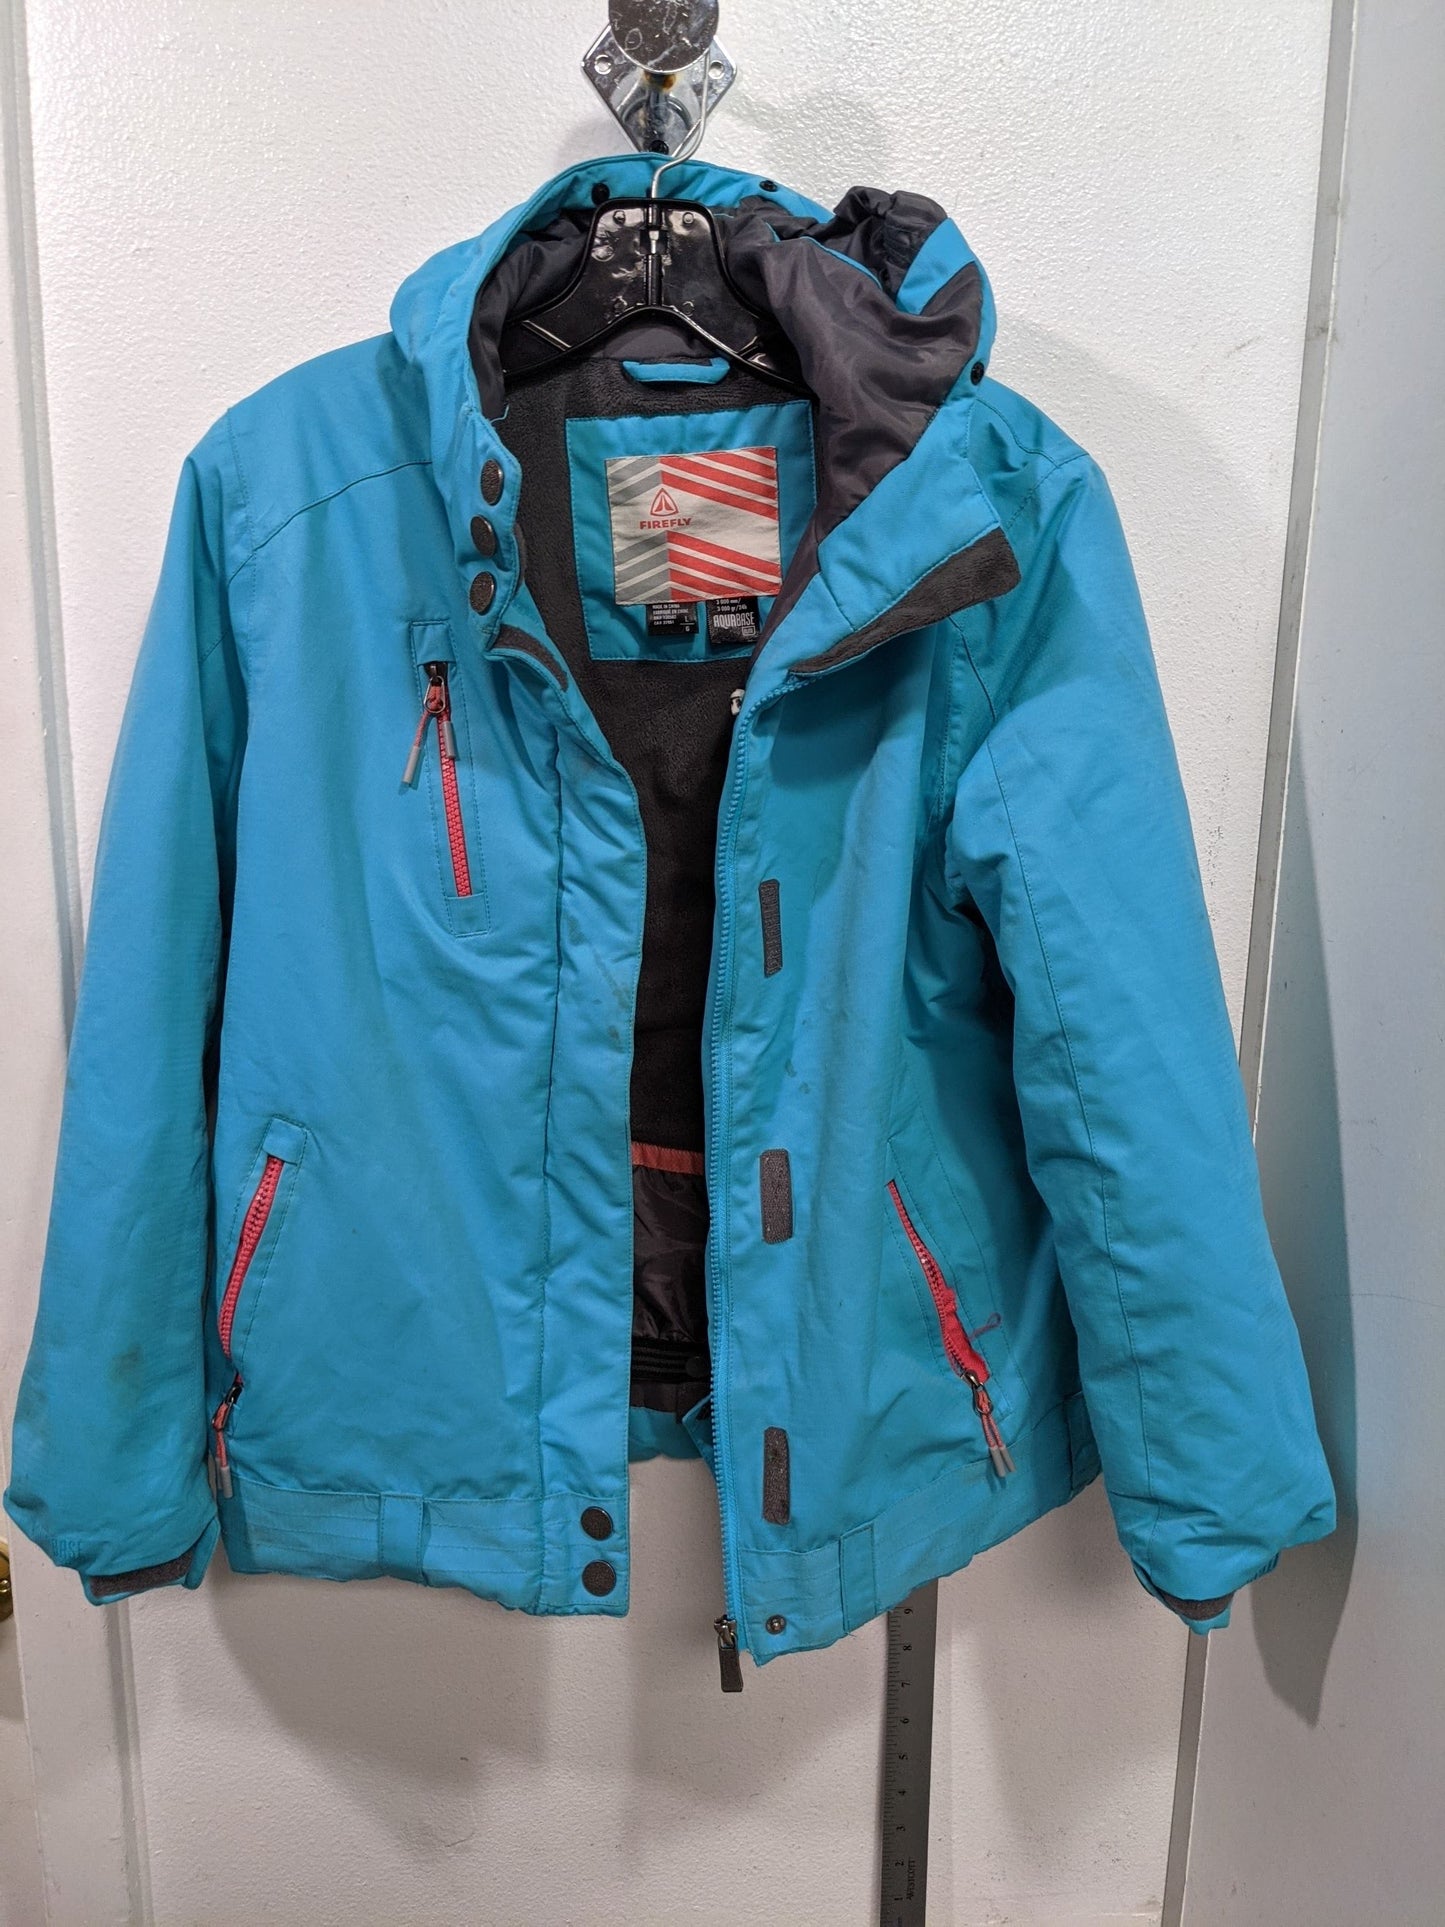 Firefly Hooded Ski Board Jacket Size Youth Large Blue Used Coat